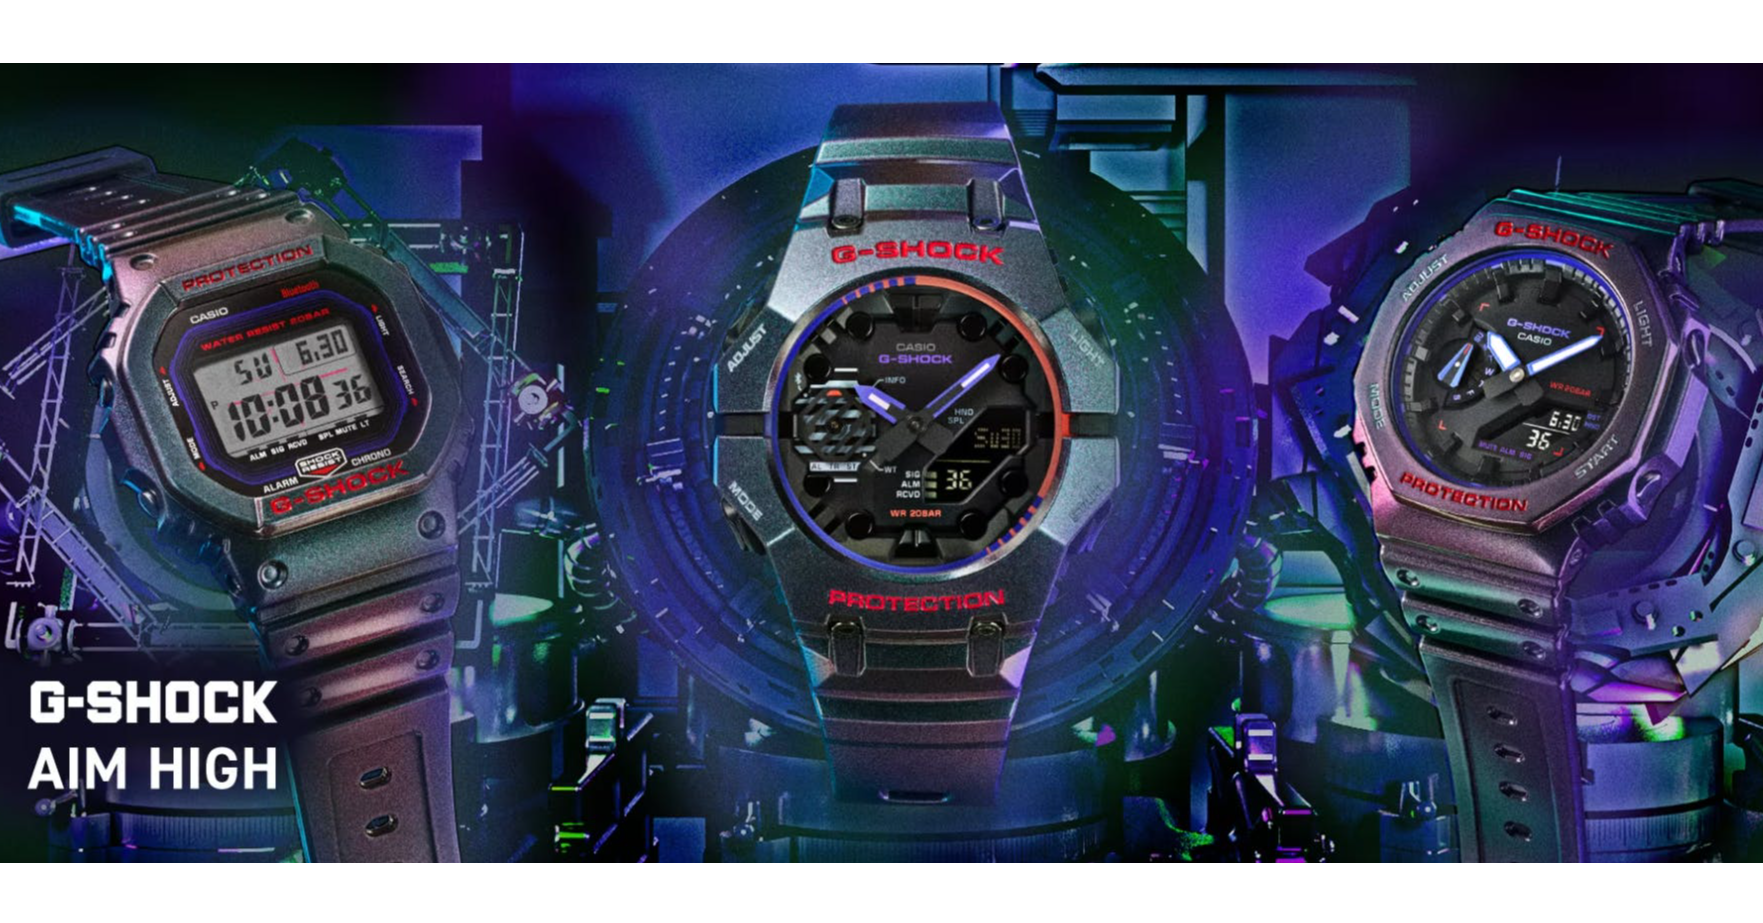 照片中提到了Lis、PROTECTION、CASIO，跟保時捷有關，包含了看、卡西歐 G-Shock 男士 DW-H5600 數位手錶、卡西歐、卡西歐、男士手錶